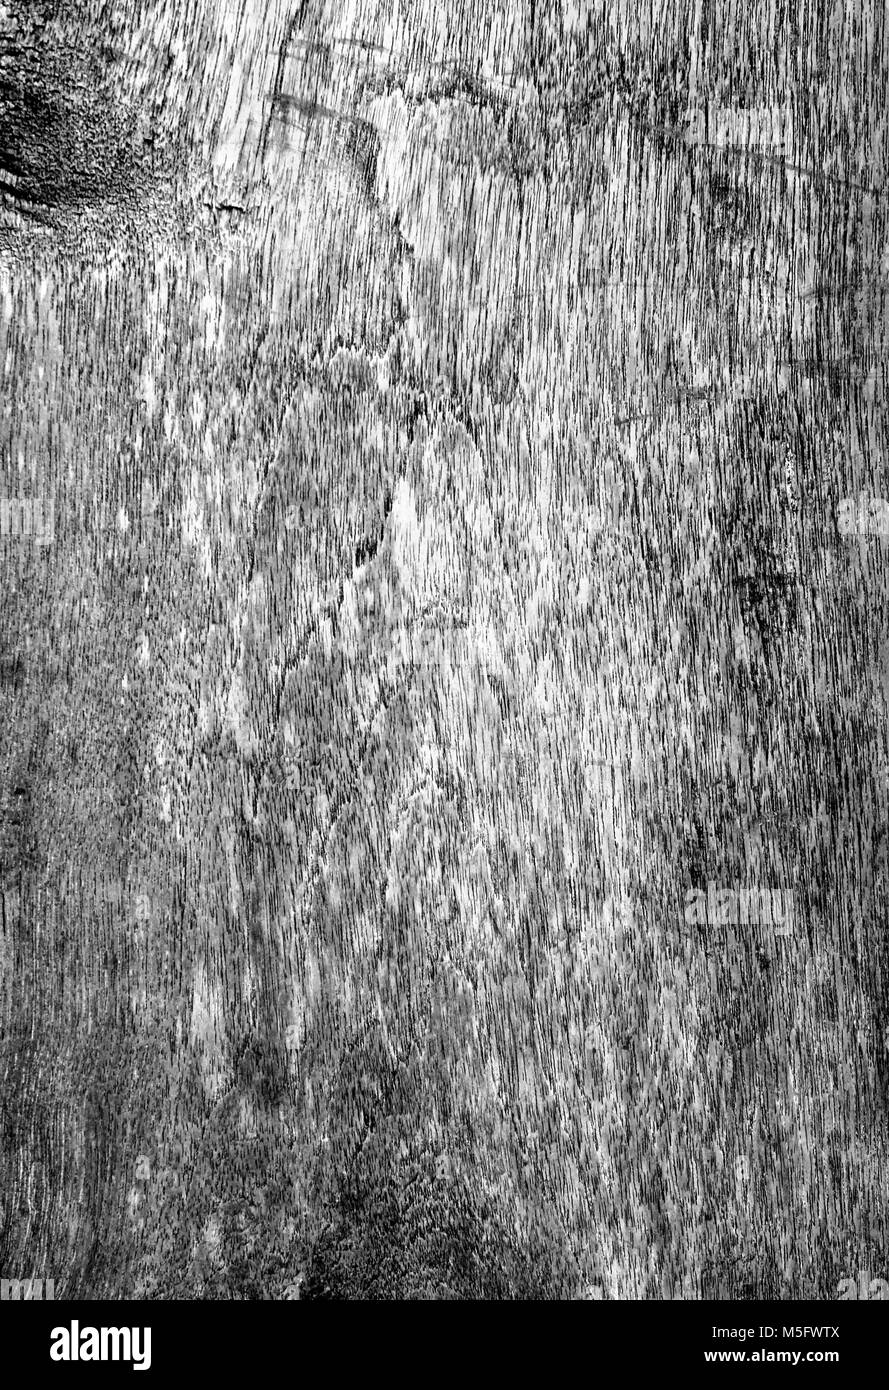 Eine Holzplatte Textur, eine schwarz-weiß Foto Bild einer Holzplatte vorhanden ein Detail der Textur und Muster einer Holzplatte in diesem Bereich, können Stockfoto